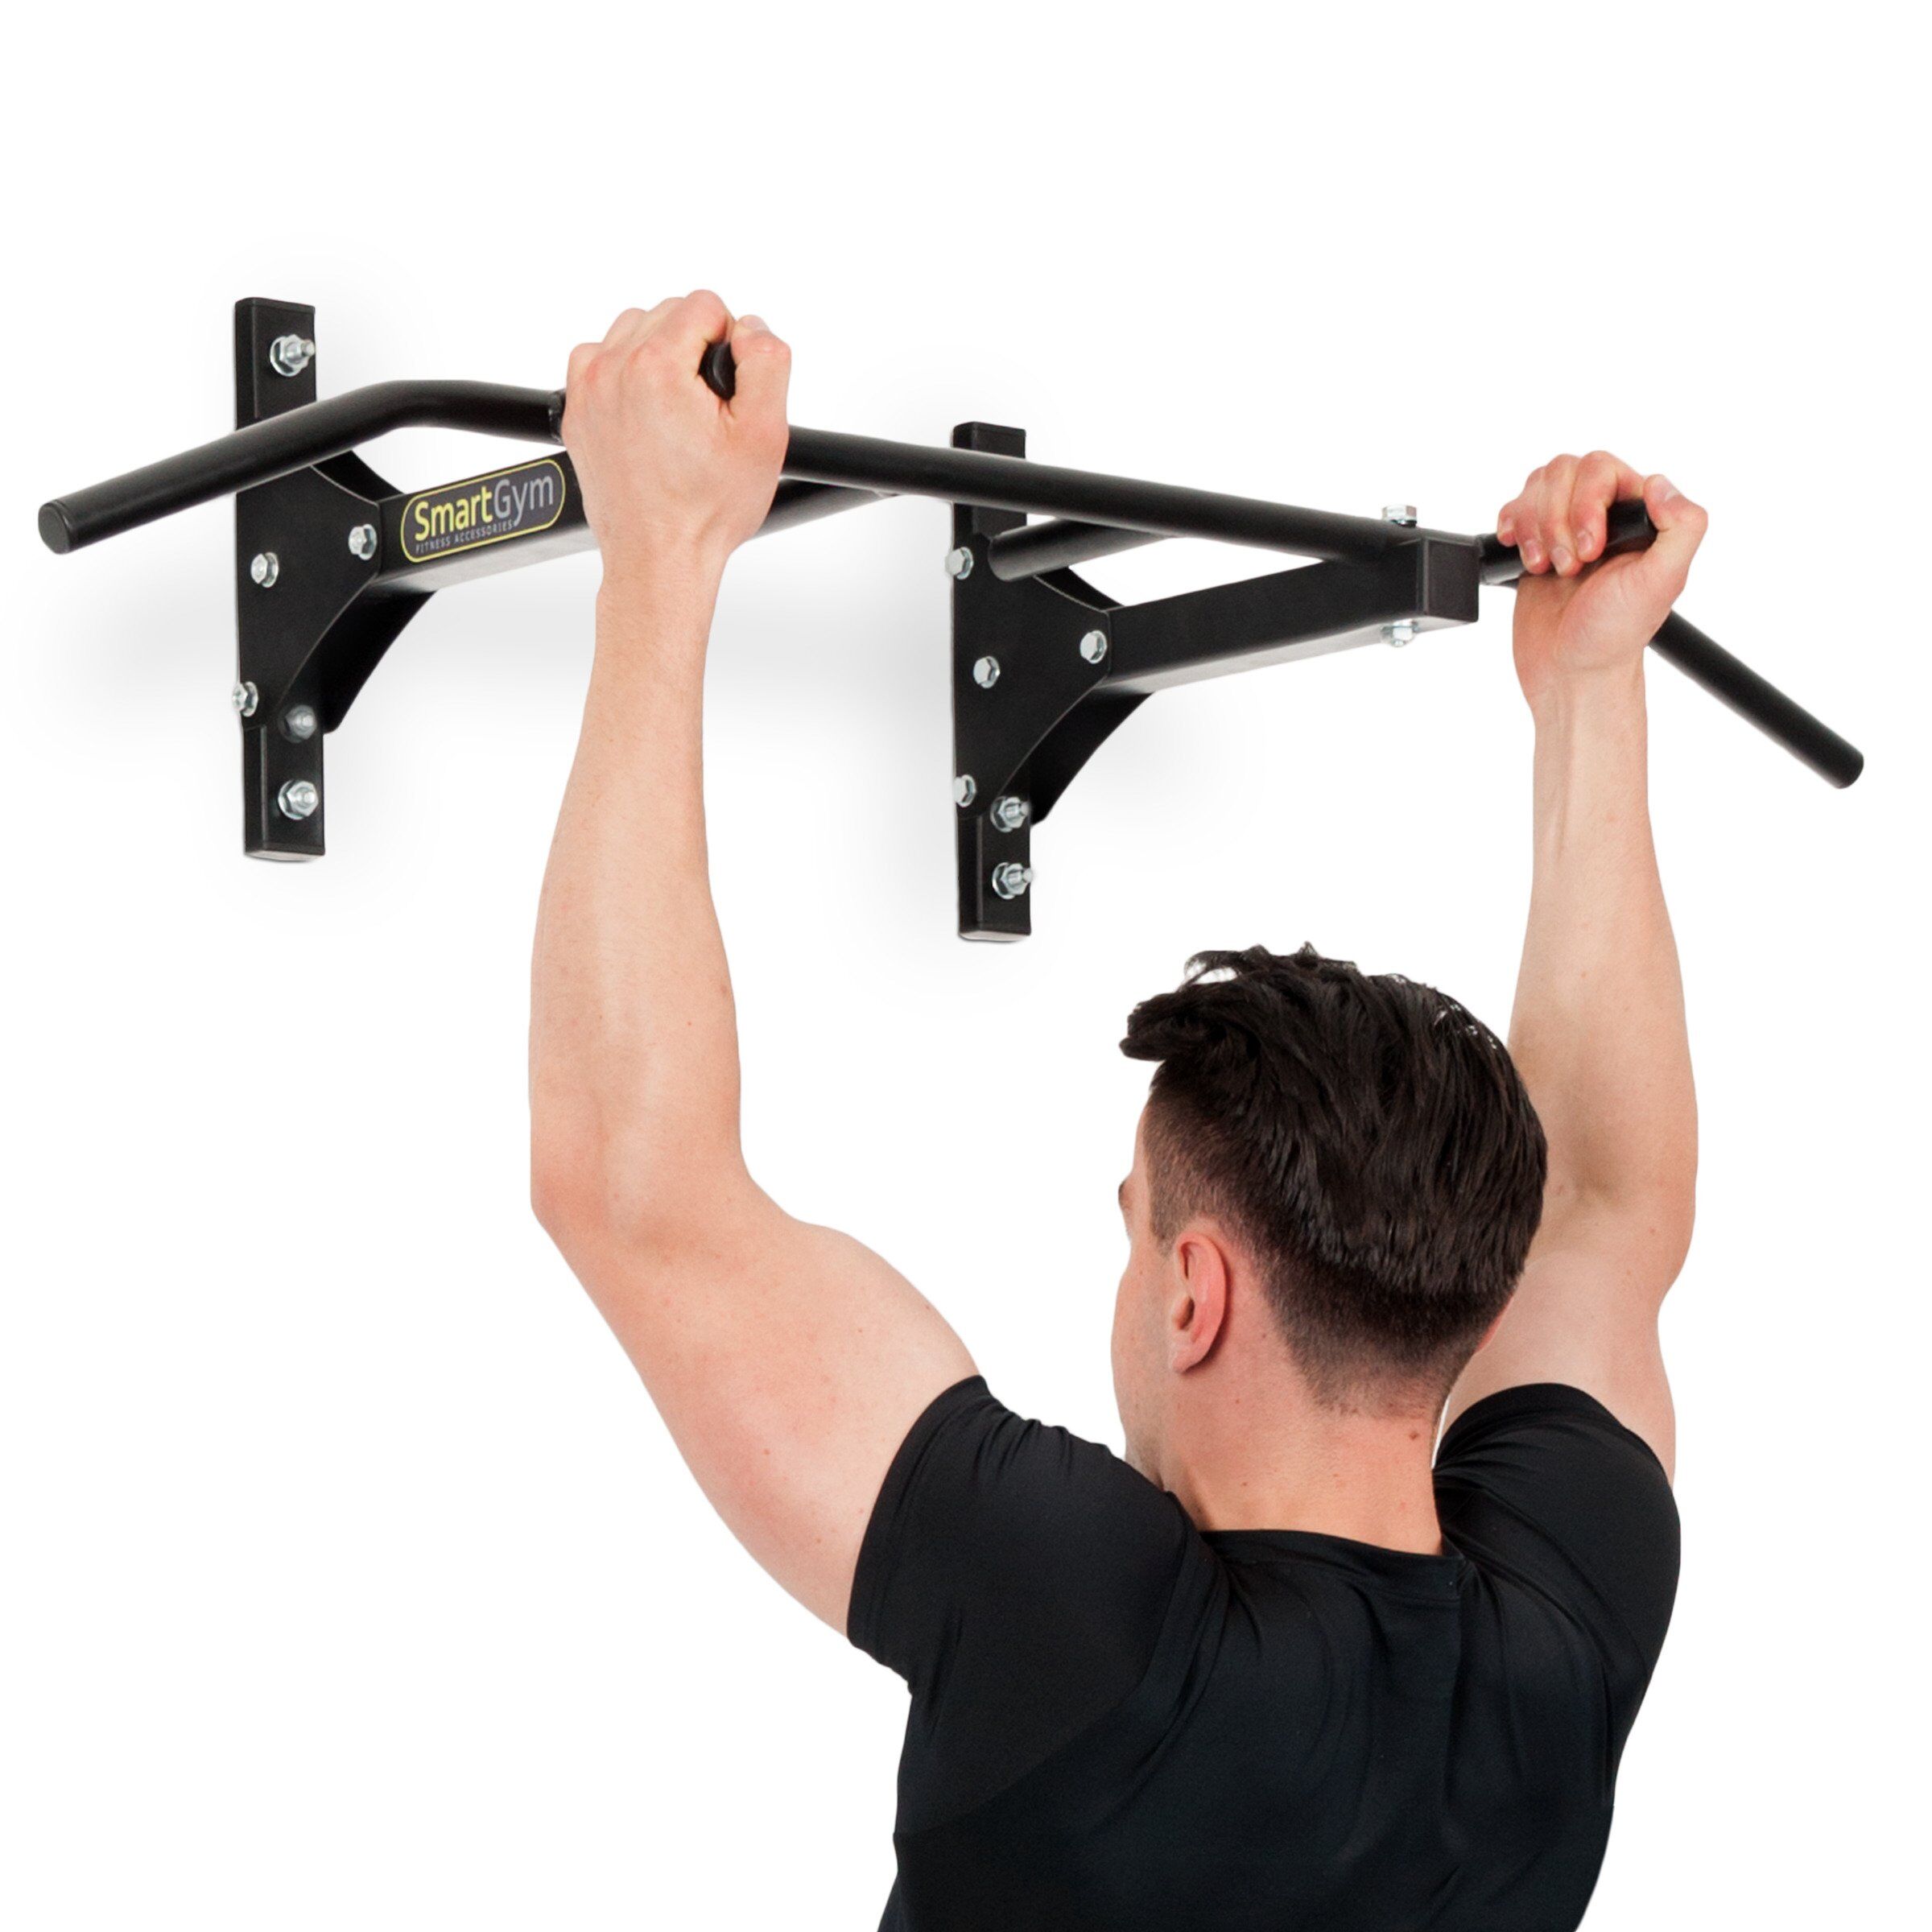 Sbarra per esercizi pull-up a parete/soffitto SG-12 - Accessori fitness SmartGym